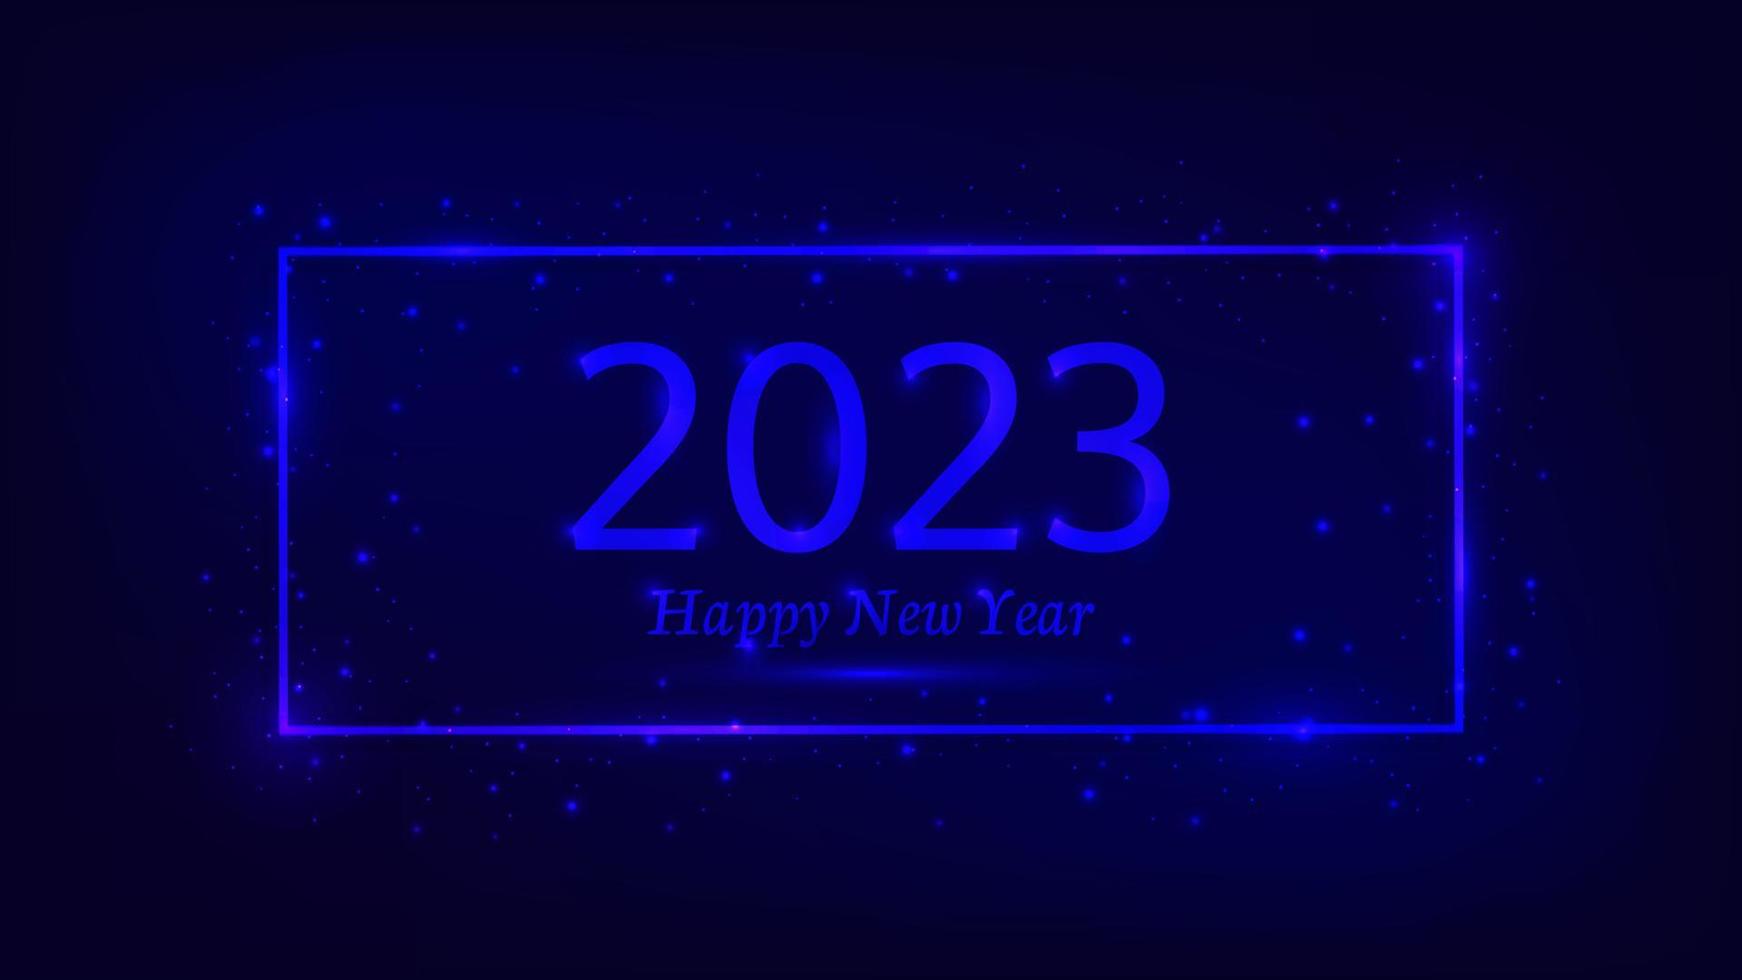 2023 feliz año nuevo fondo de neón. marco rectangular de neón con efectos brillantes y destellos para tarjetas de felicitación navideñas, volantes o carteles. ilustración vectorial vector